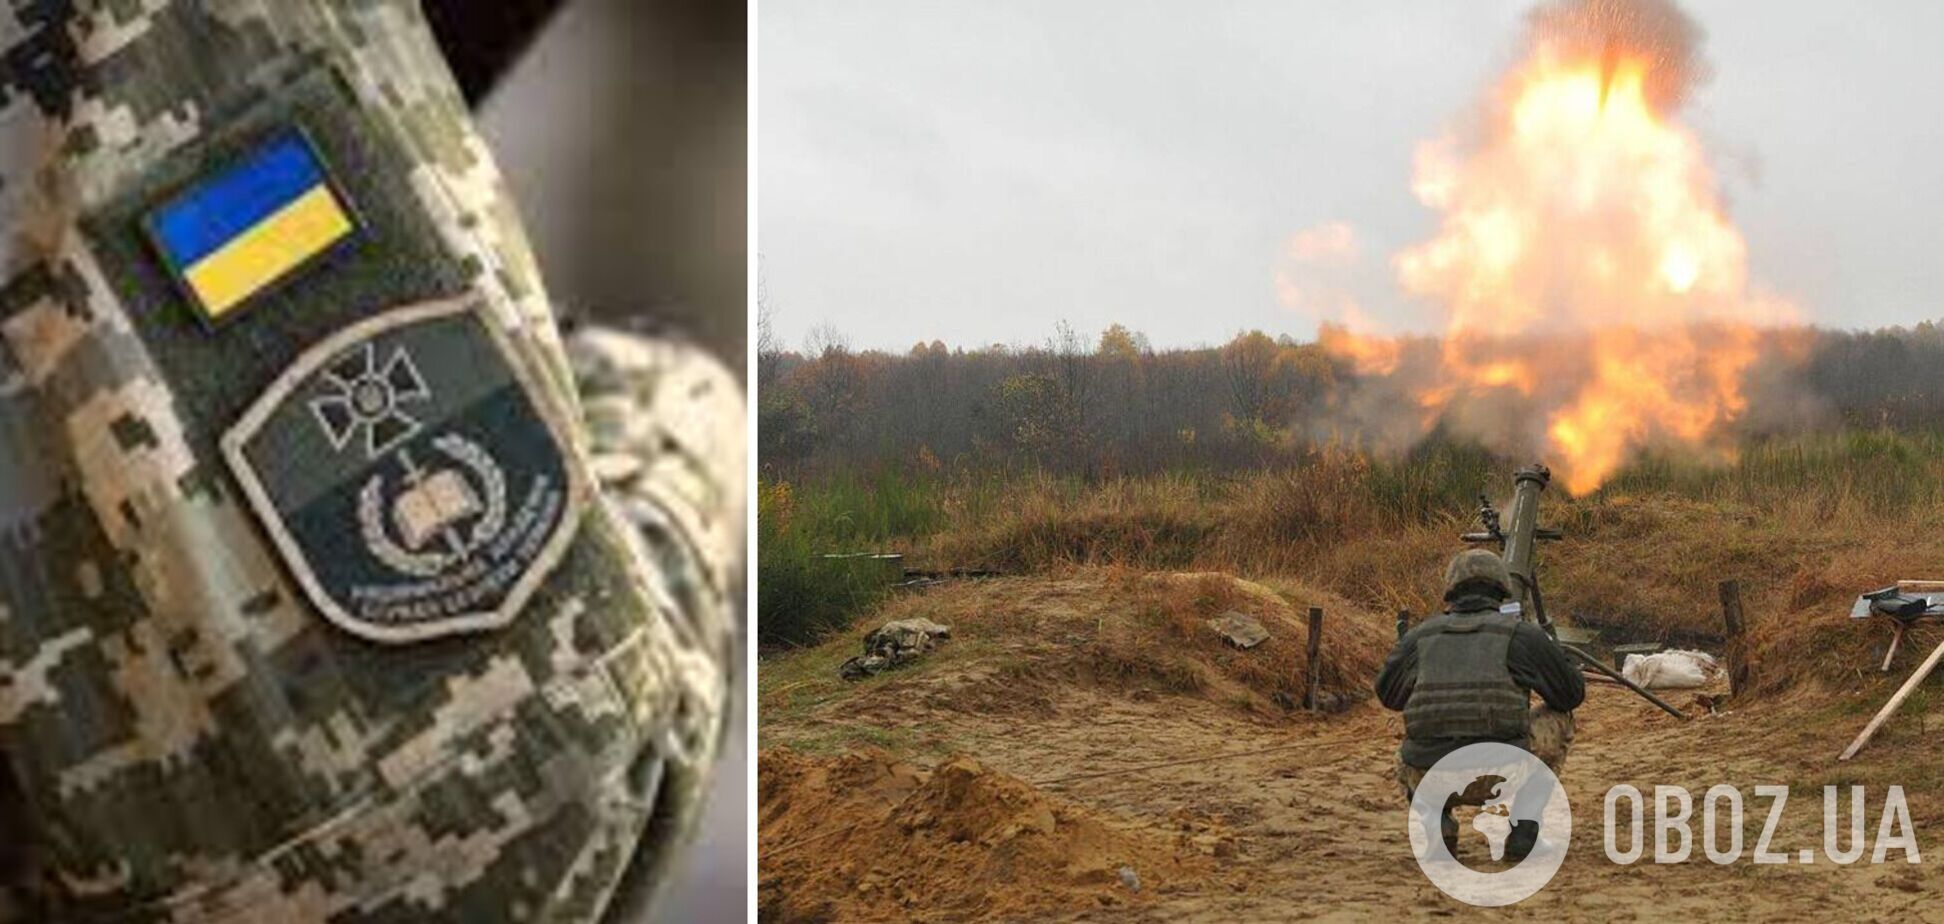 СБУ выдвинула обвинение командиру боевиков, который руководил обстрелами позиций ВСУ на Донбассе. Фото